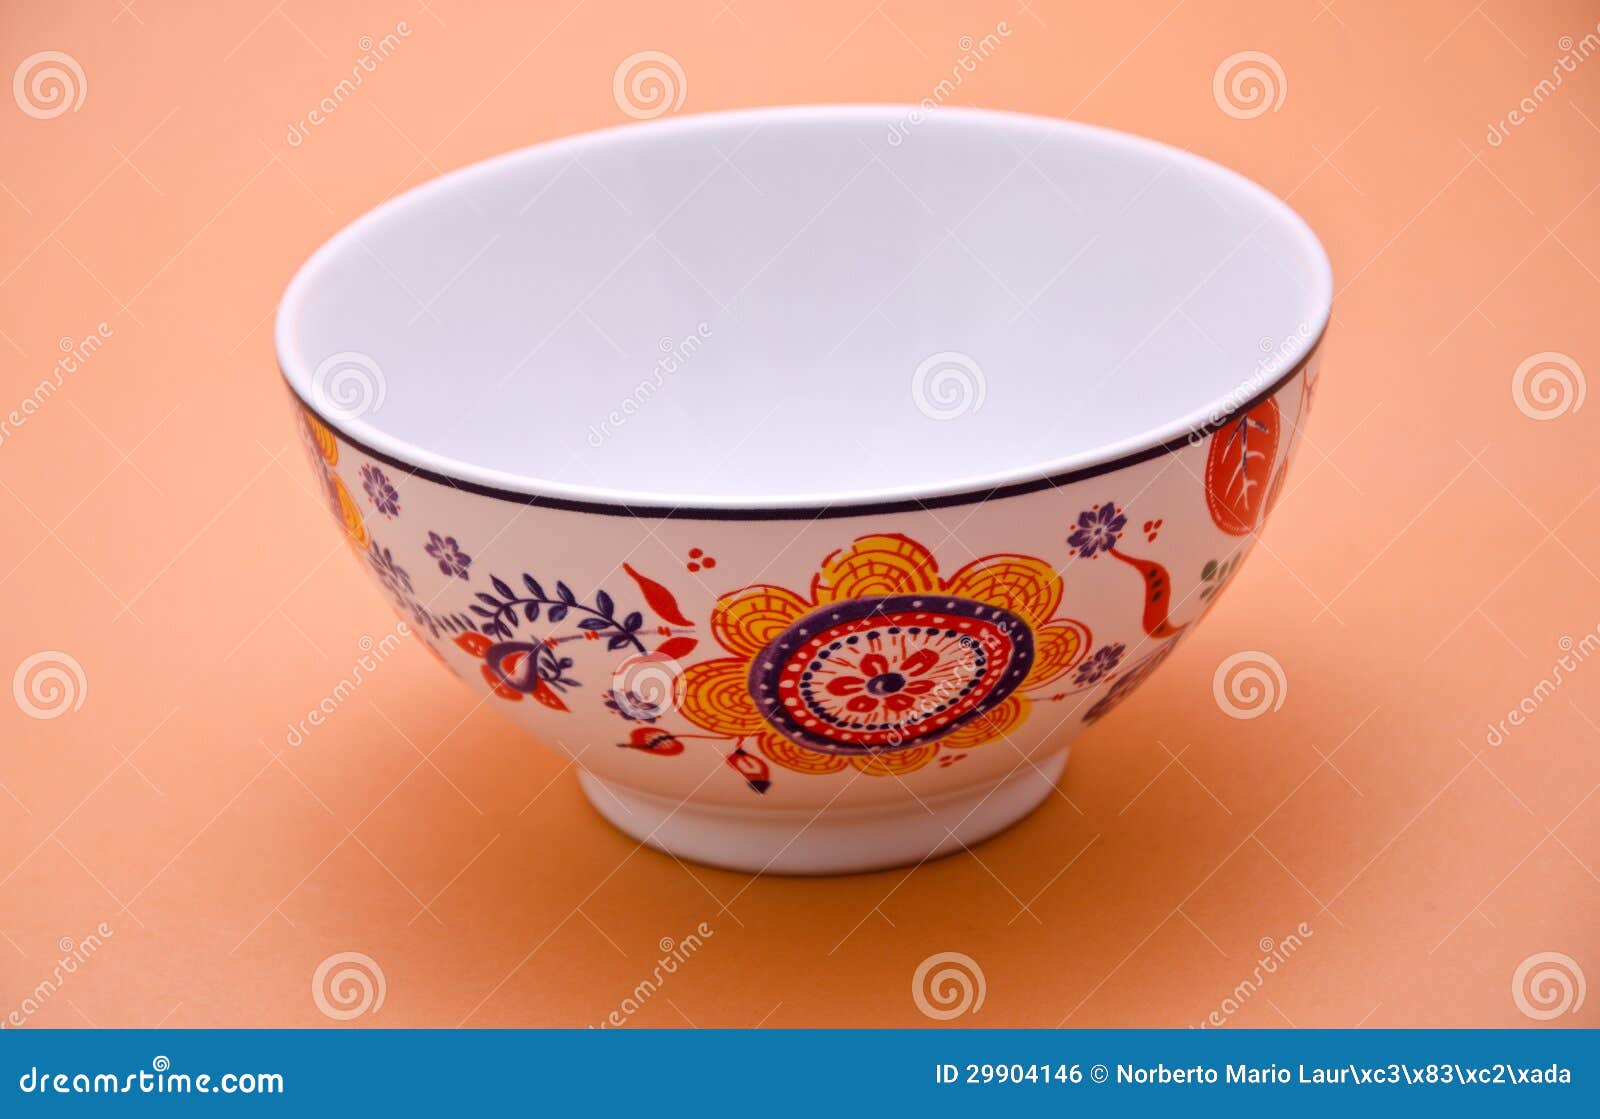 decorated ceramic pot